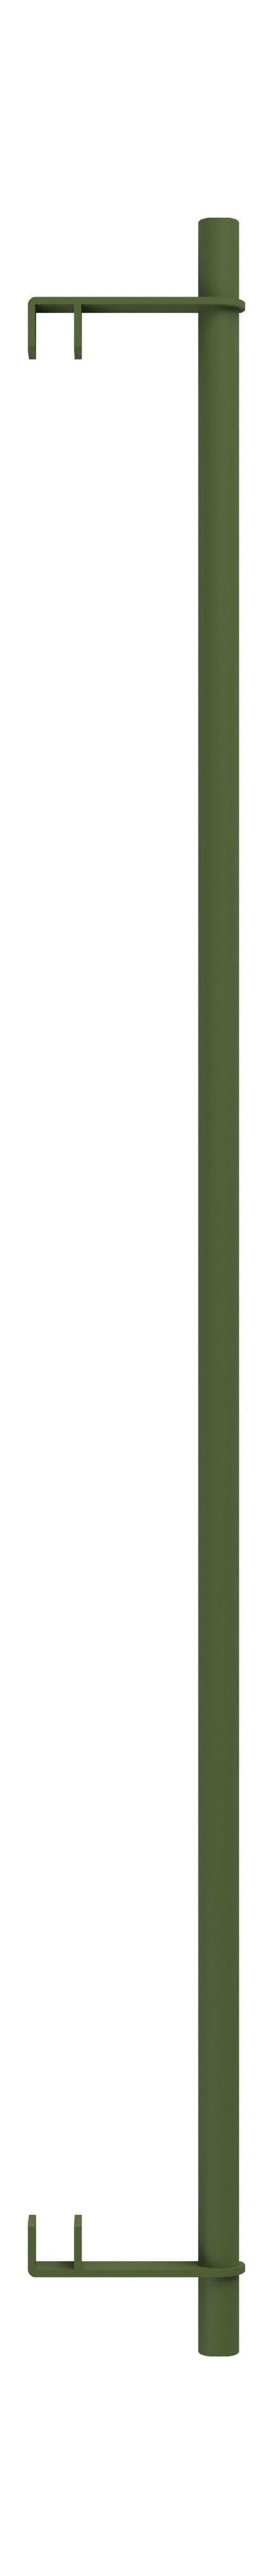 Moebe Hyllsystem/vägghyllkläder bar 85 cm, tallgrön